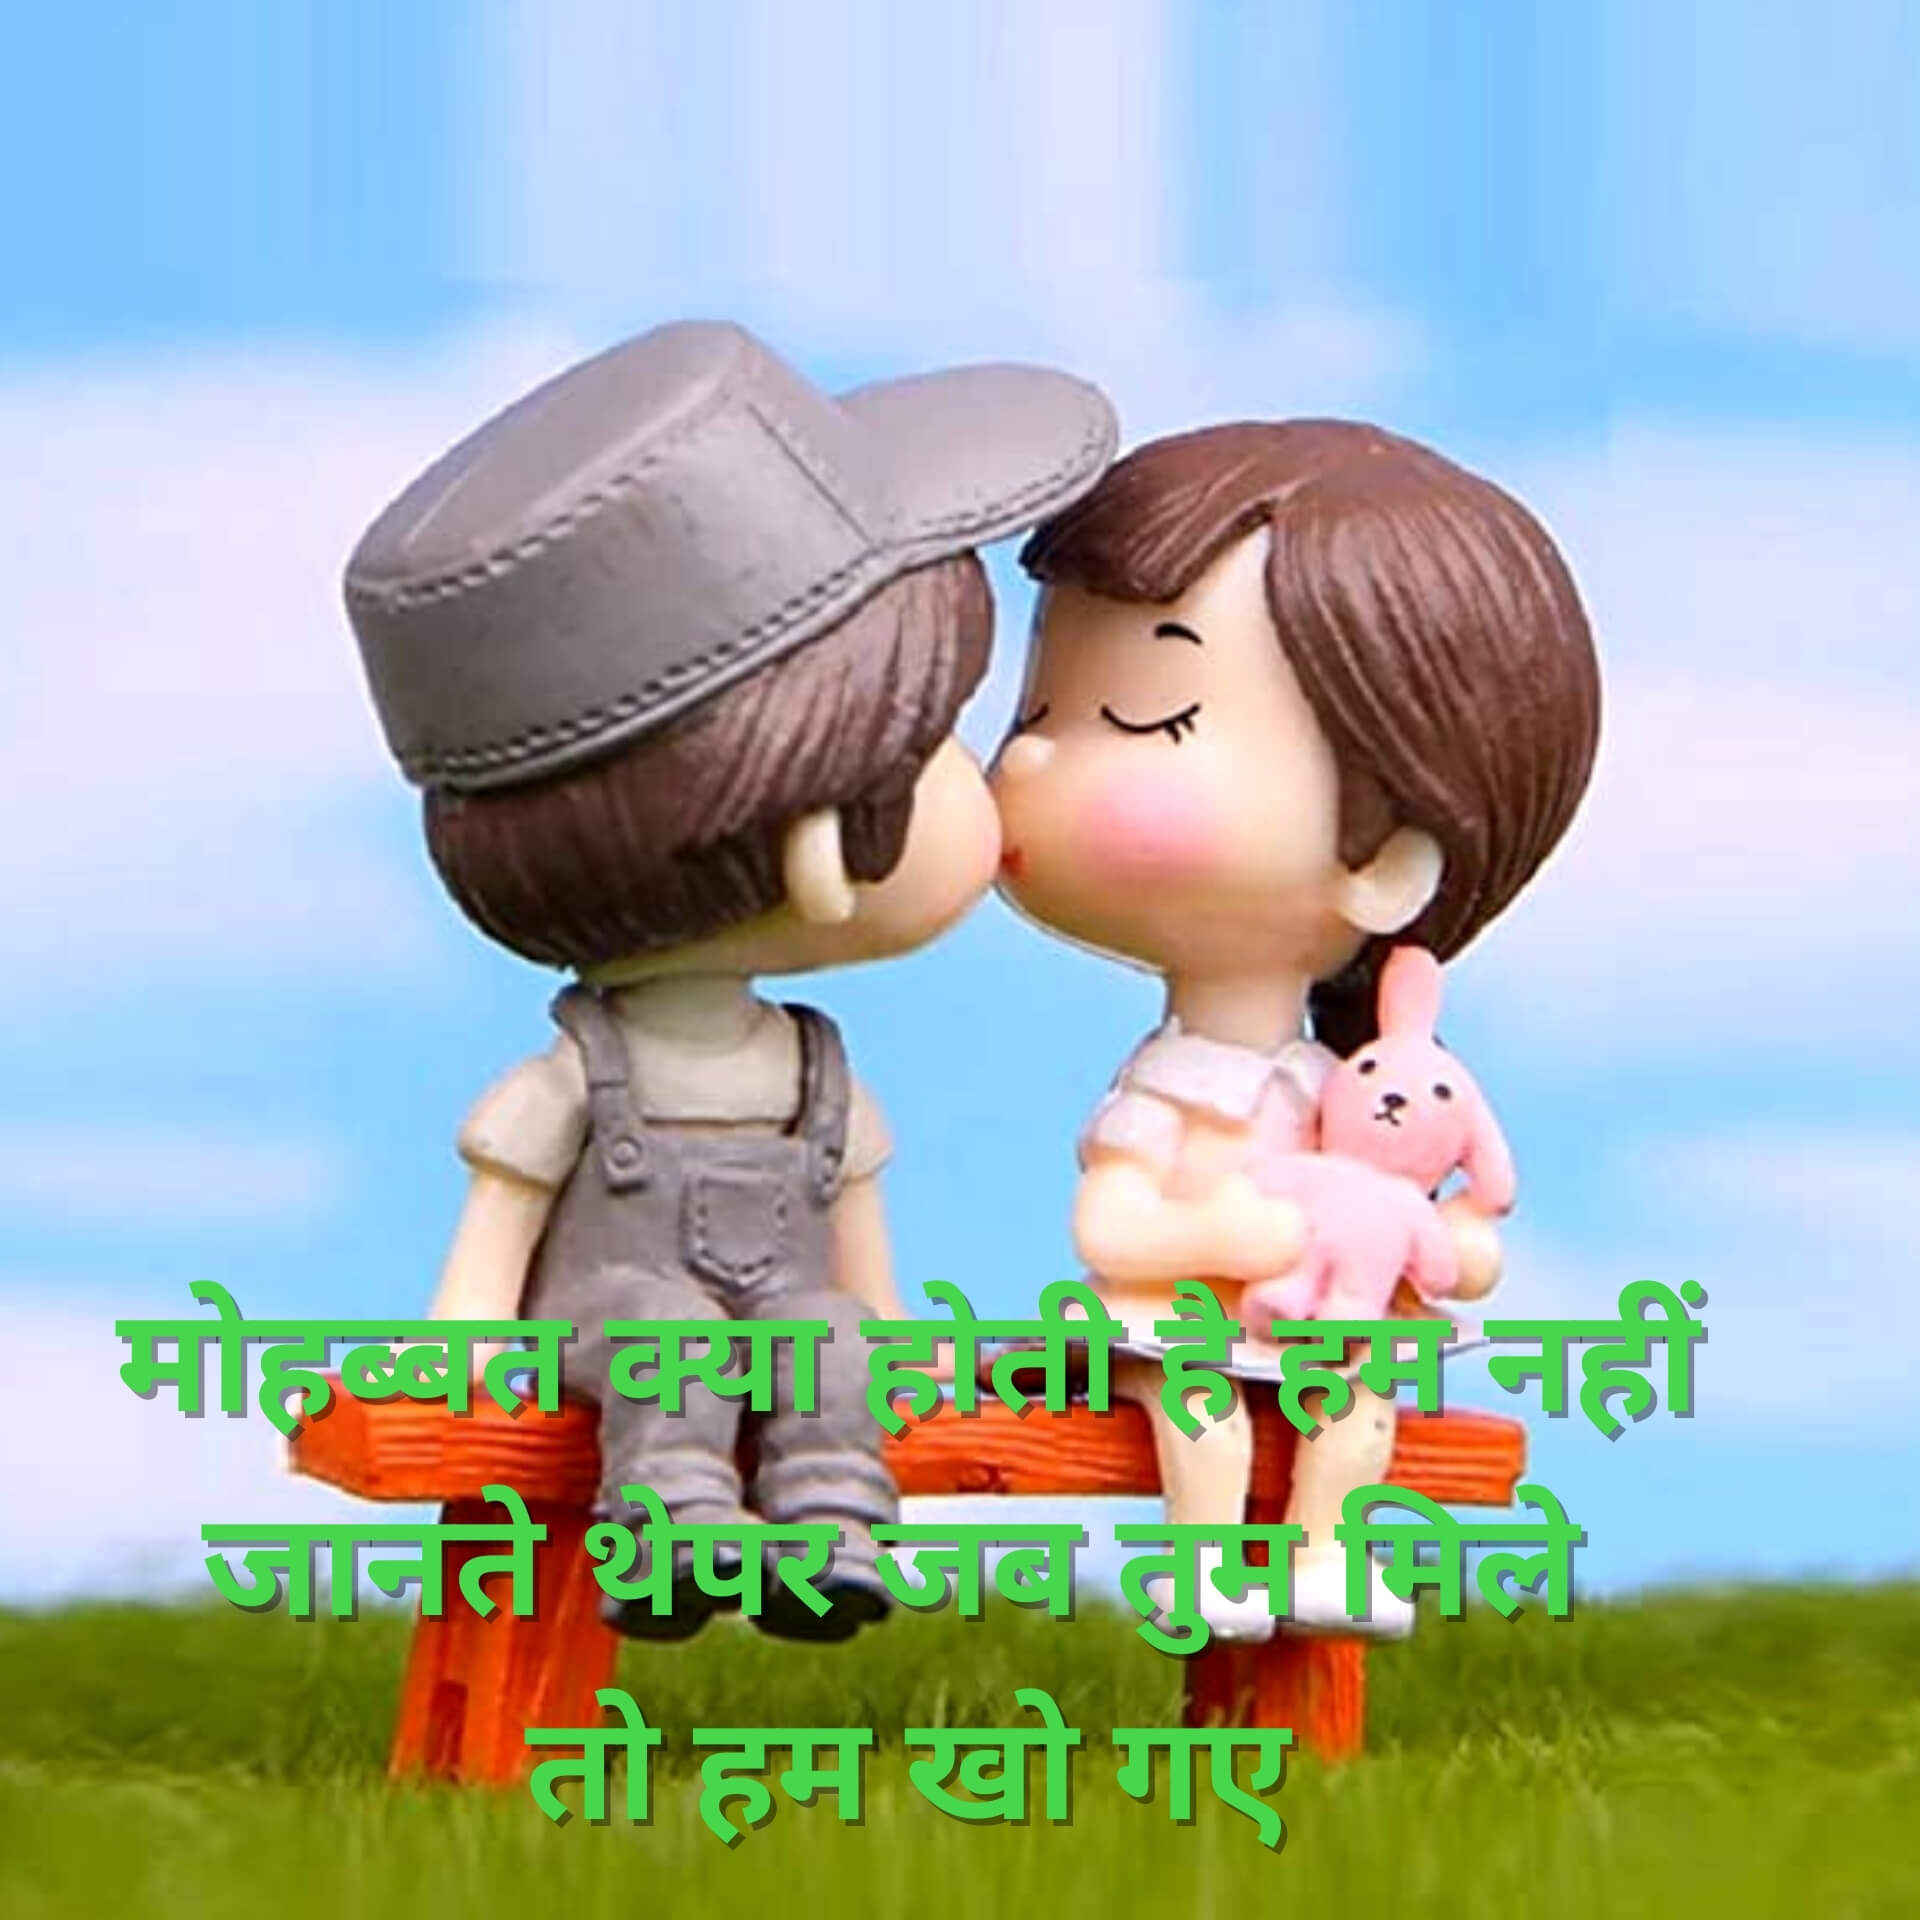 311+ Love Whatsapp Status Images In Hindi